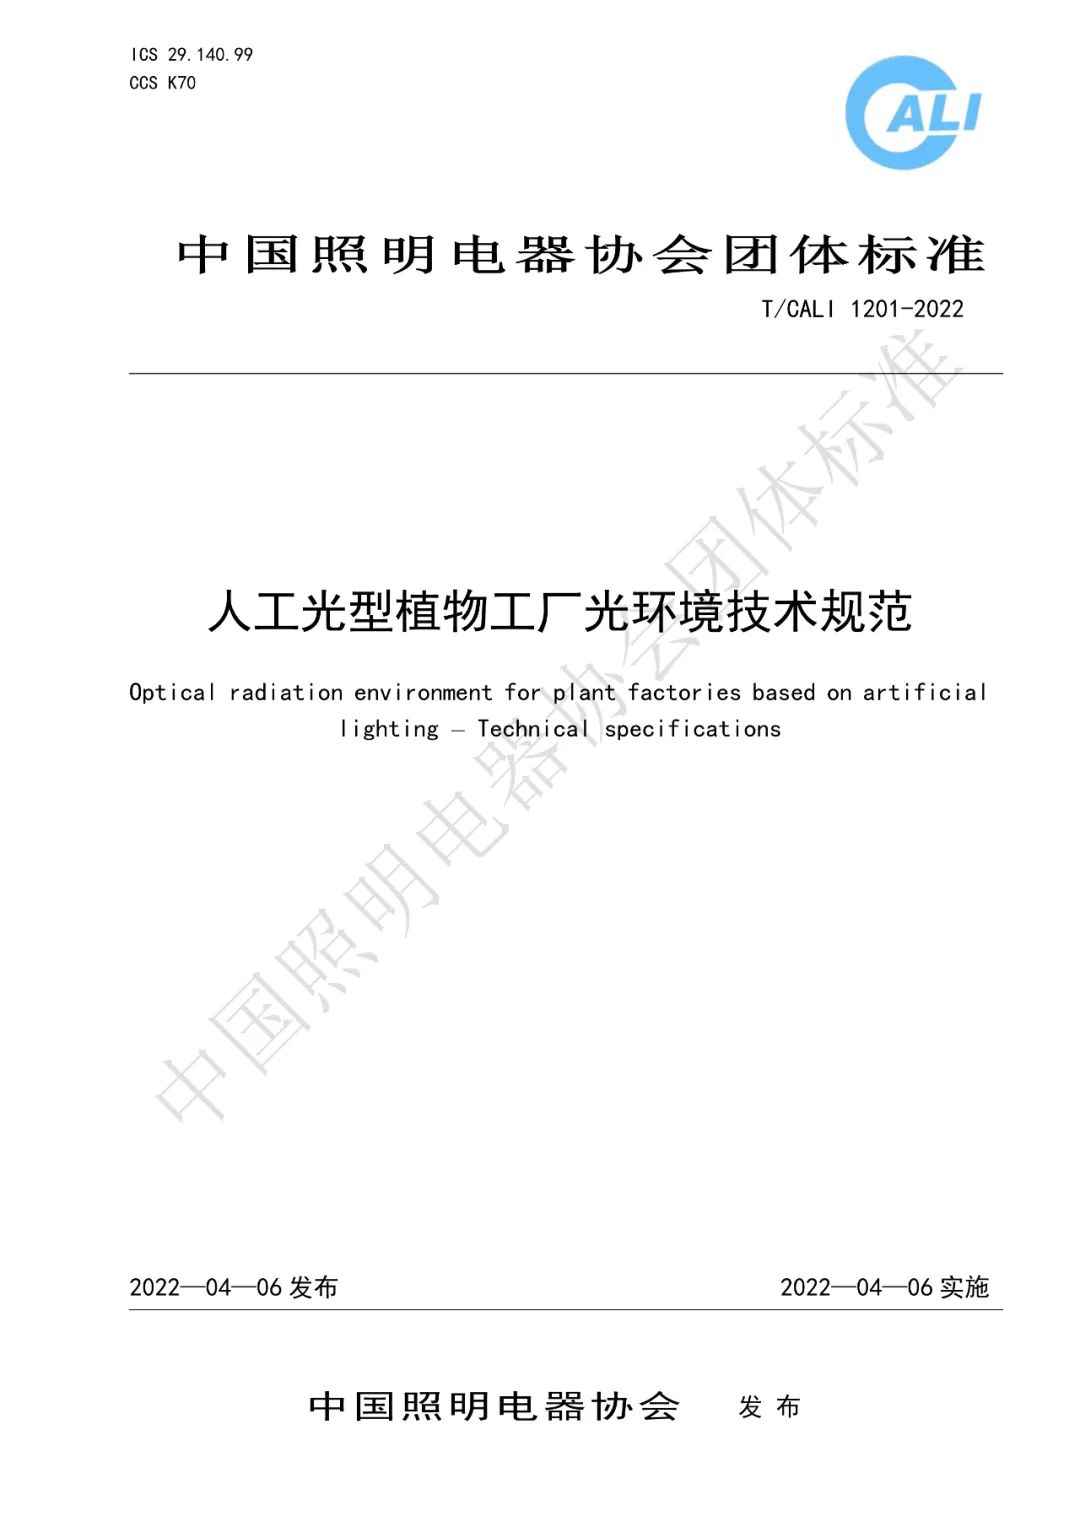 《人工光型植物工厂光环境技术规范》